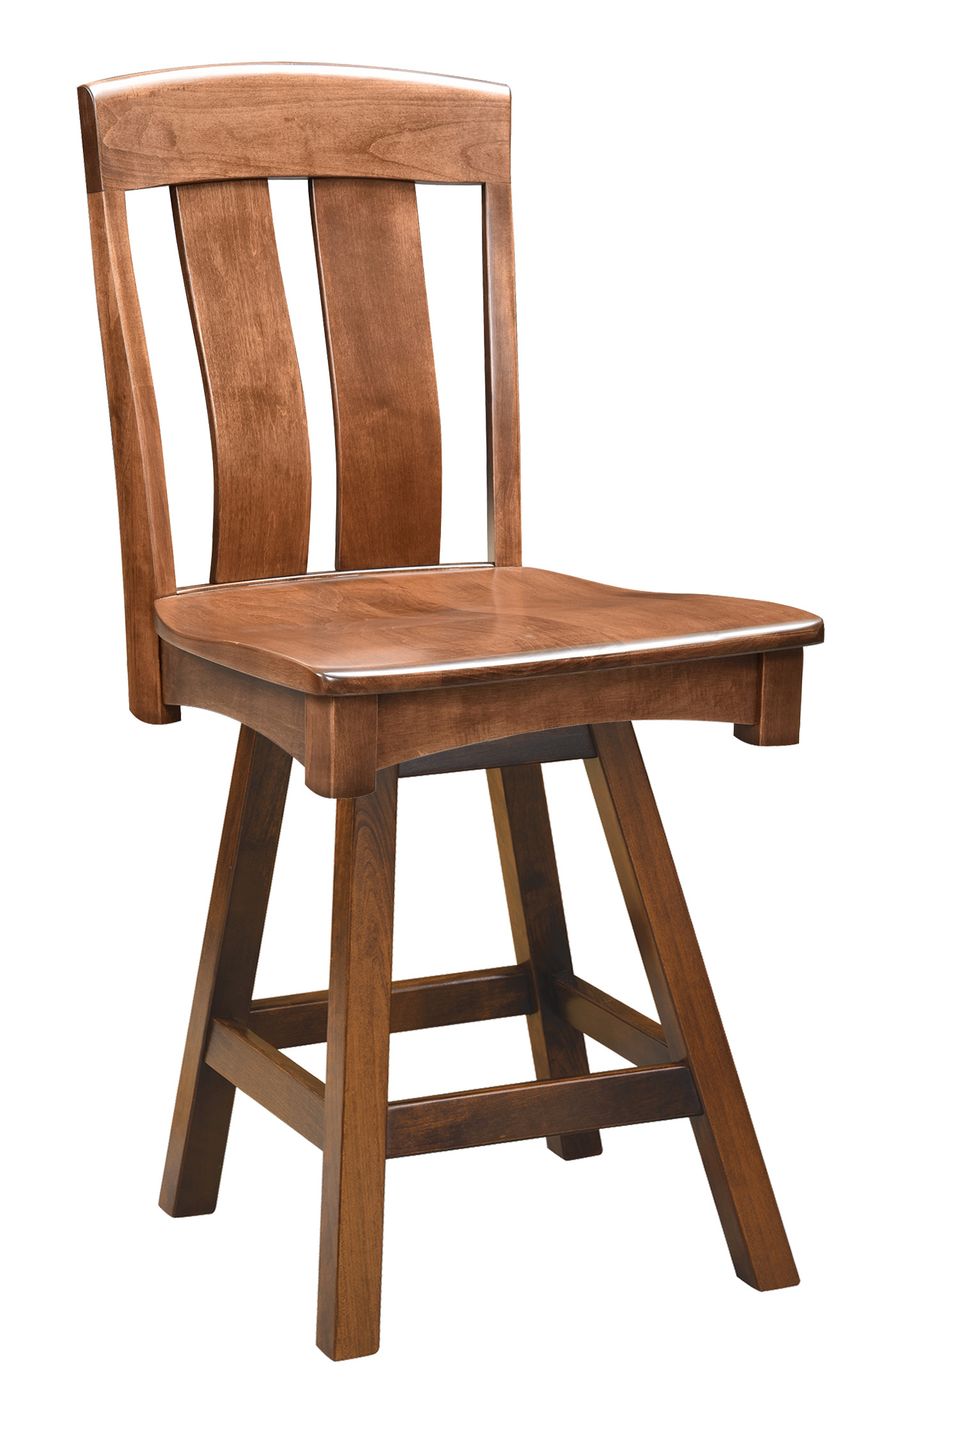 Faw cheyenne swivel bar chair